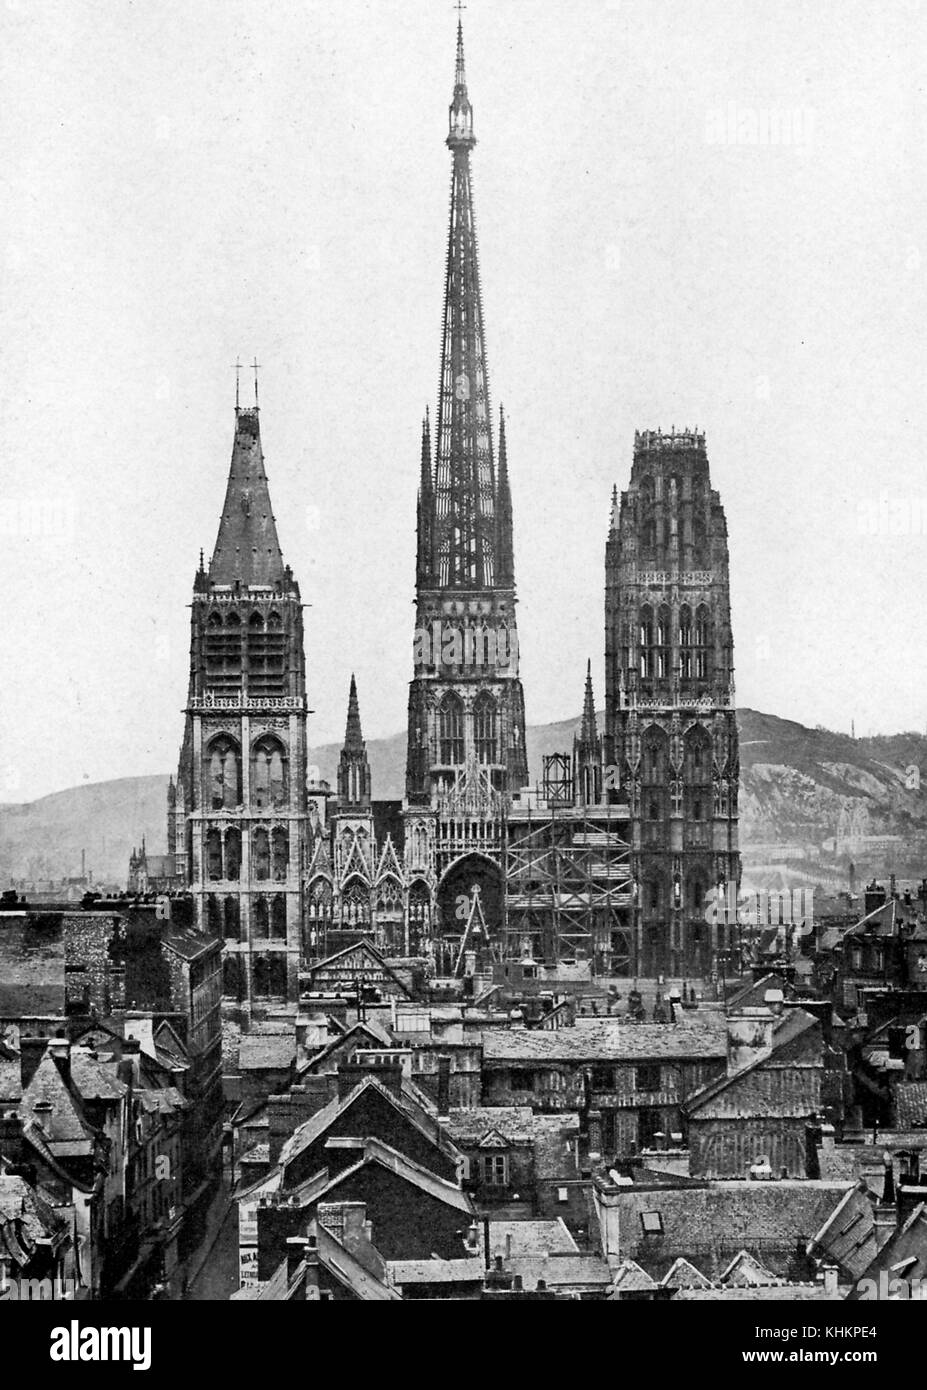 Vue de rouen cathédrale Notre-dame, considéré comme l'un des plus beaux édifices gothique en Normandie, la tour saint romain (à gauche) remonte au 12ème siècle et est la partie la plus ancienne du bâtiment, photo de l boulanger, France, juillet, 1922. Banque D'Images